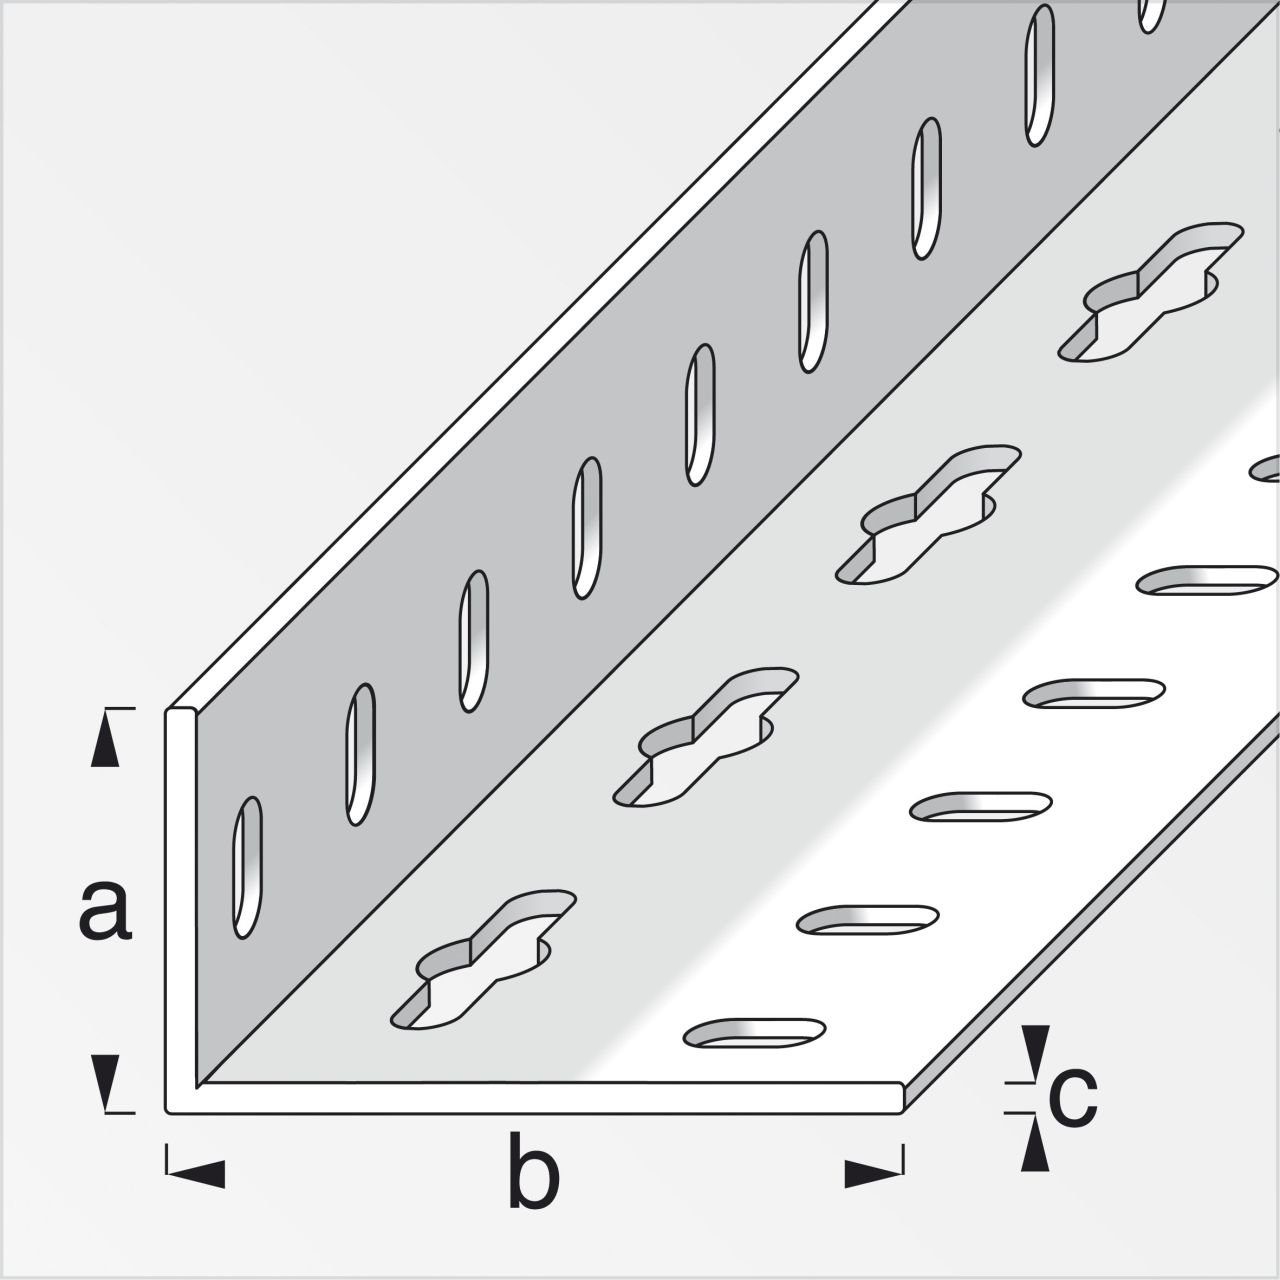 43.5 23.5 beschichtet Stahl alfer 1 alfer x mm Winkel m, Winkelverbinder